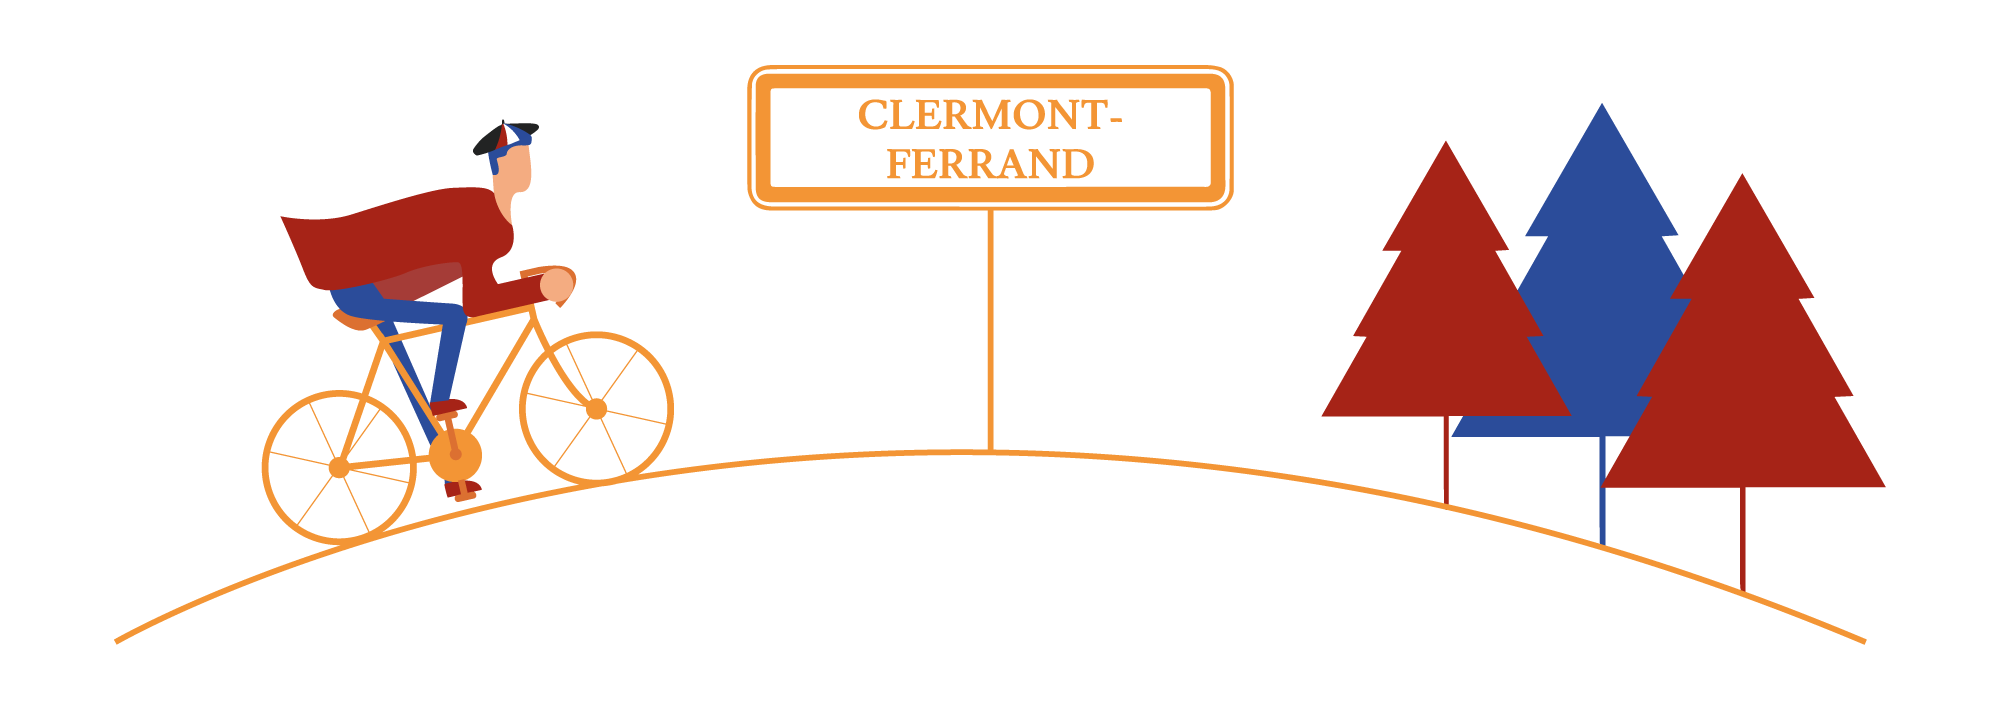 Spécialités de Clermont-Ferrand